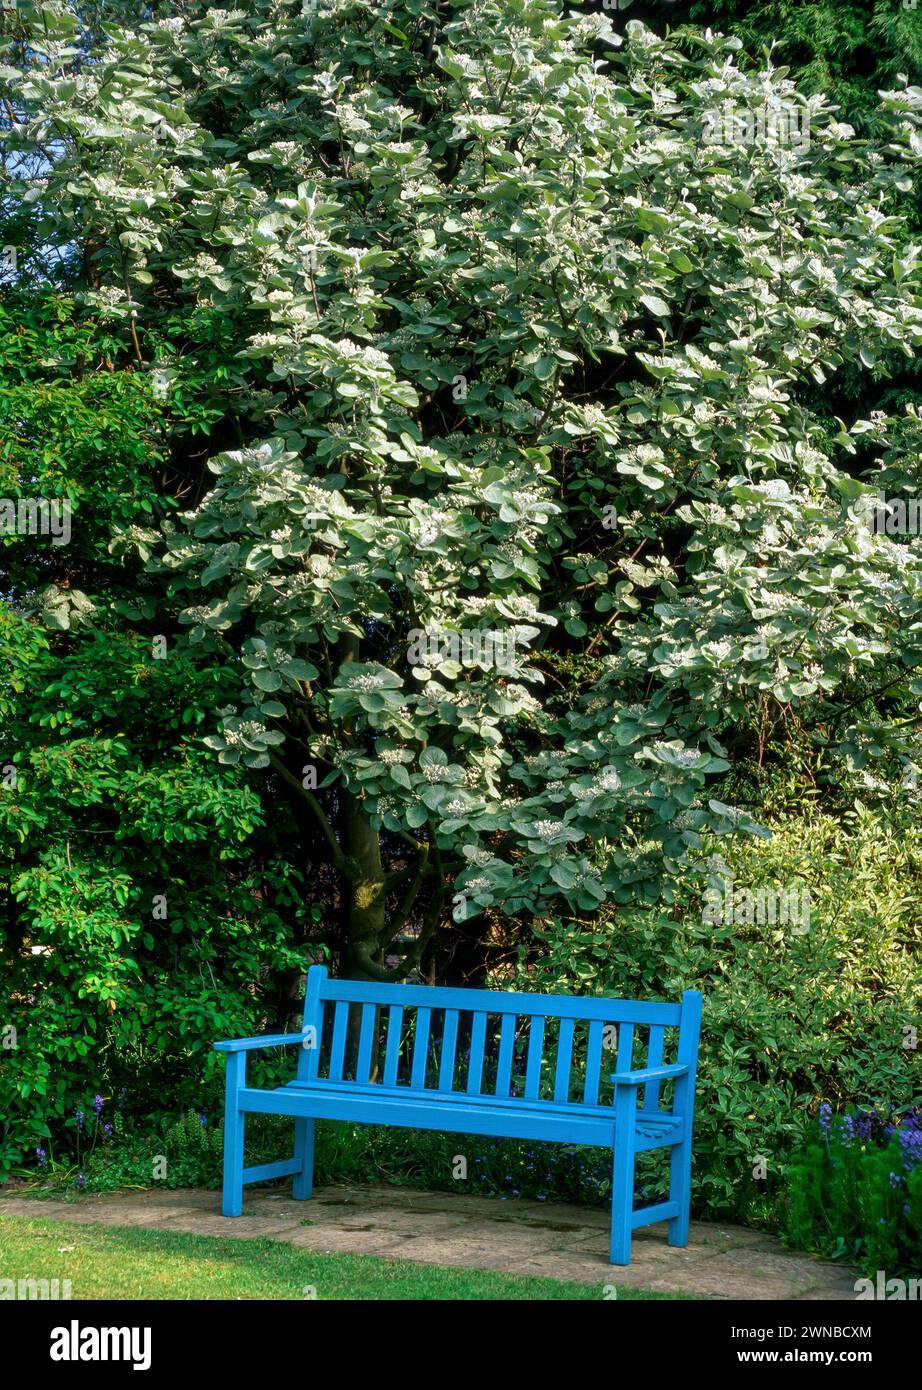 Sorbus 'Mitchellii' (Whitebeam) / Sorbus 'John Mitchell' / Sorbus thibetica 'John Mitchell' with blue painted bench seat in English garden,England, UK Stock Photo